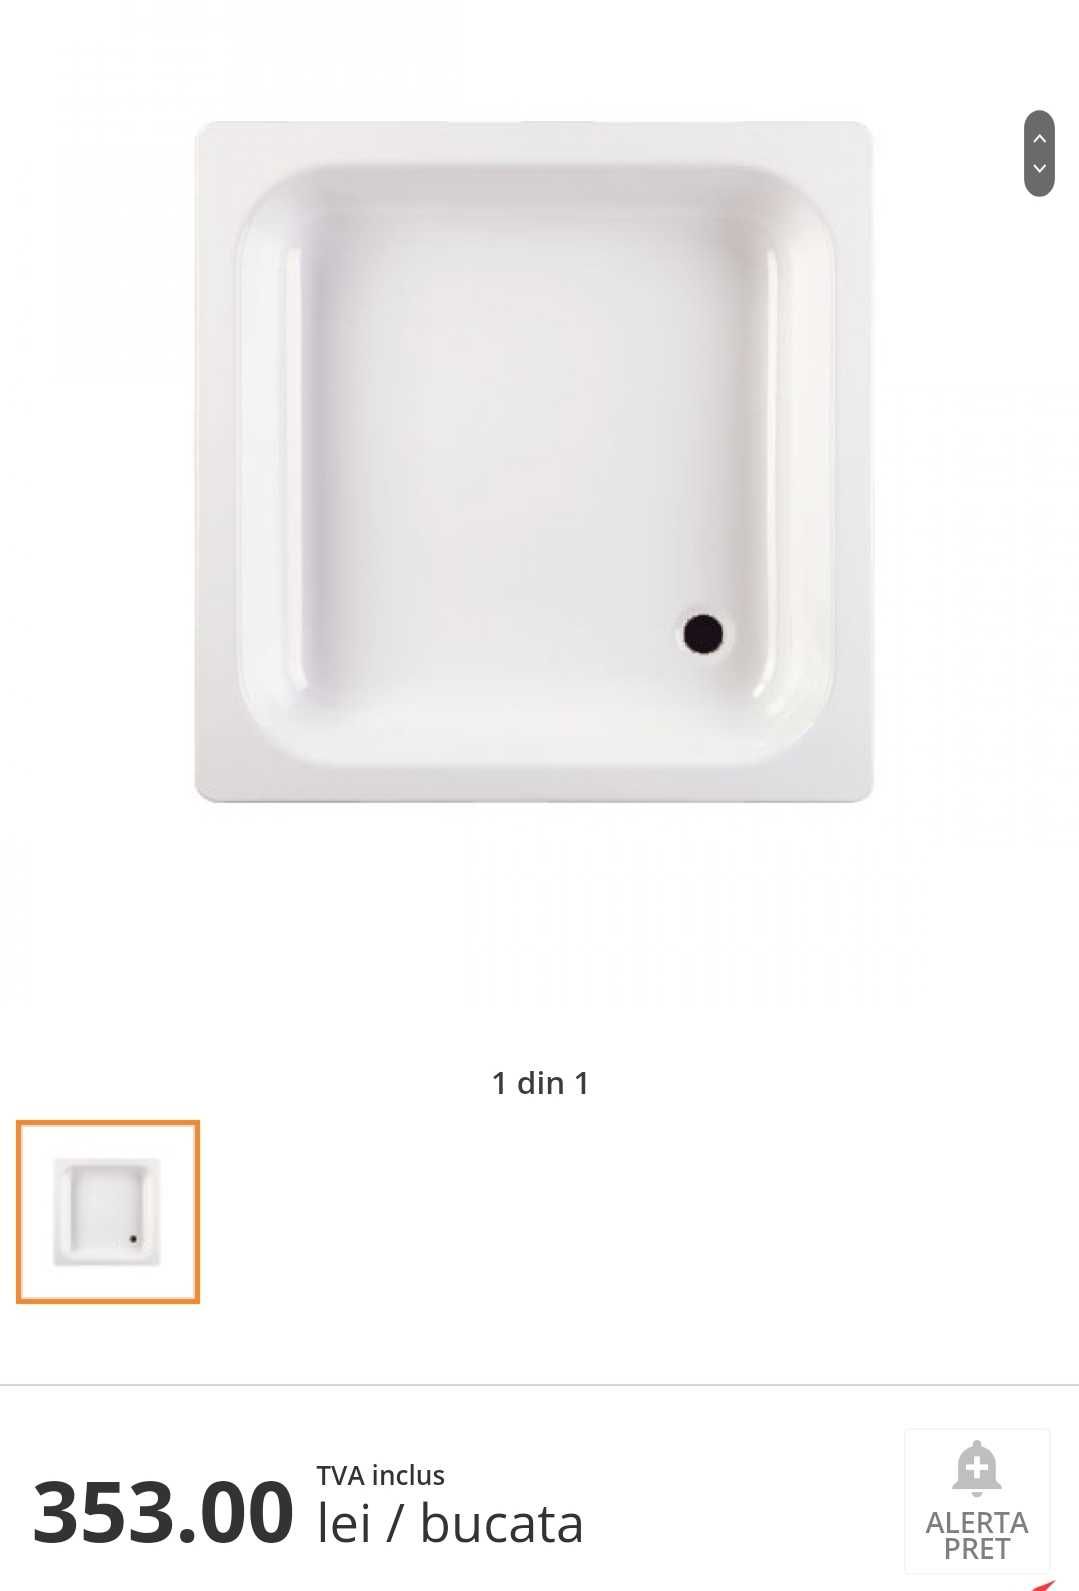 Set baie: Vană + chiuvetă + vas wc + cădiță + oglindă (toate noi)